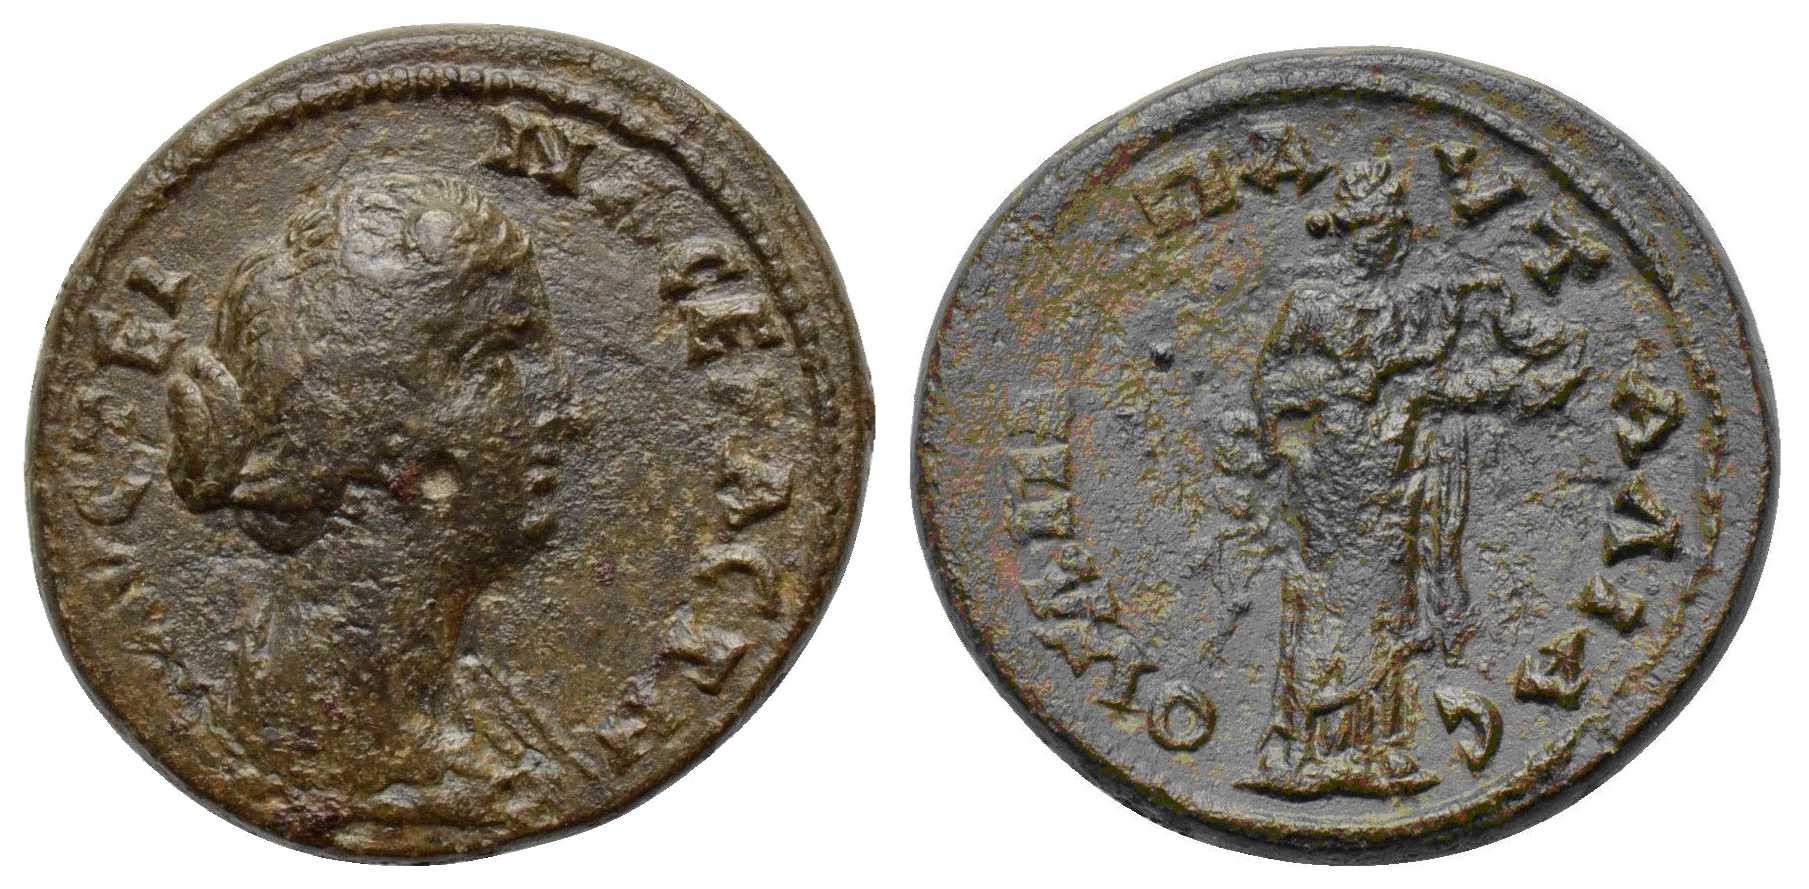 5930 Pautalia Thracia Faustina jr. AE